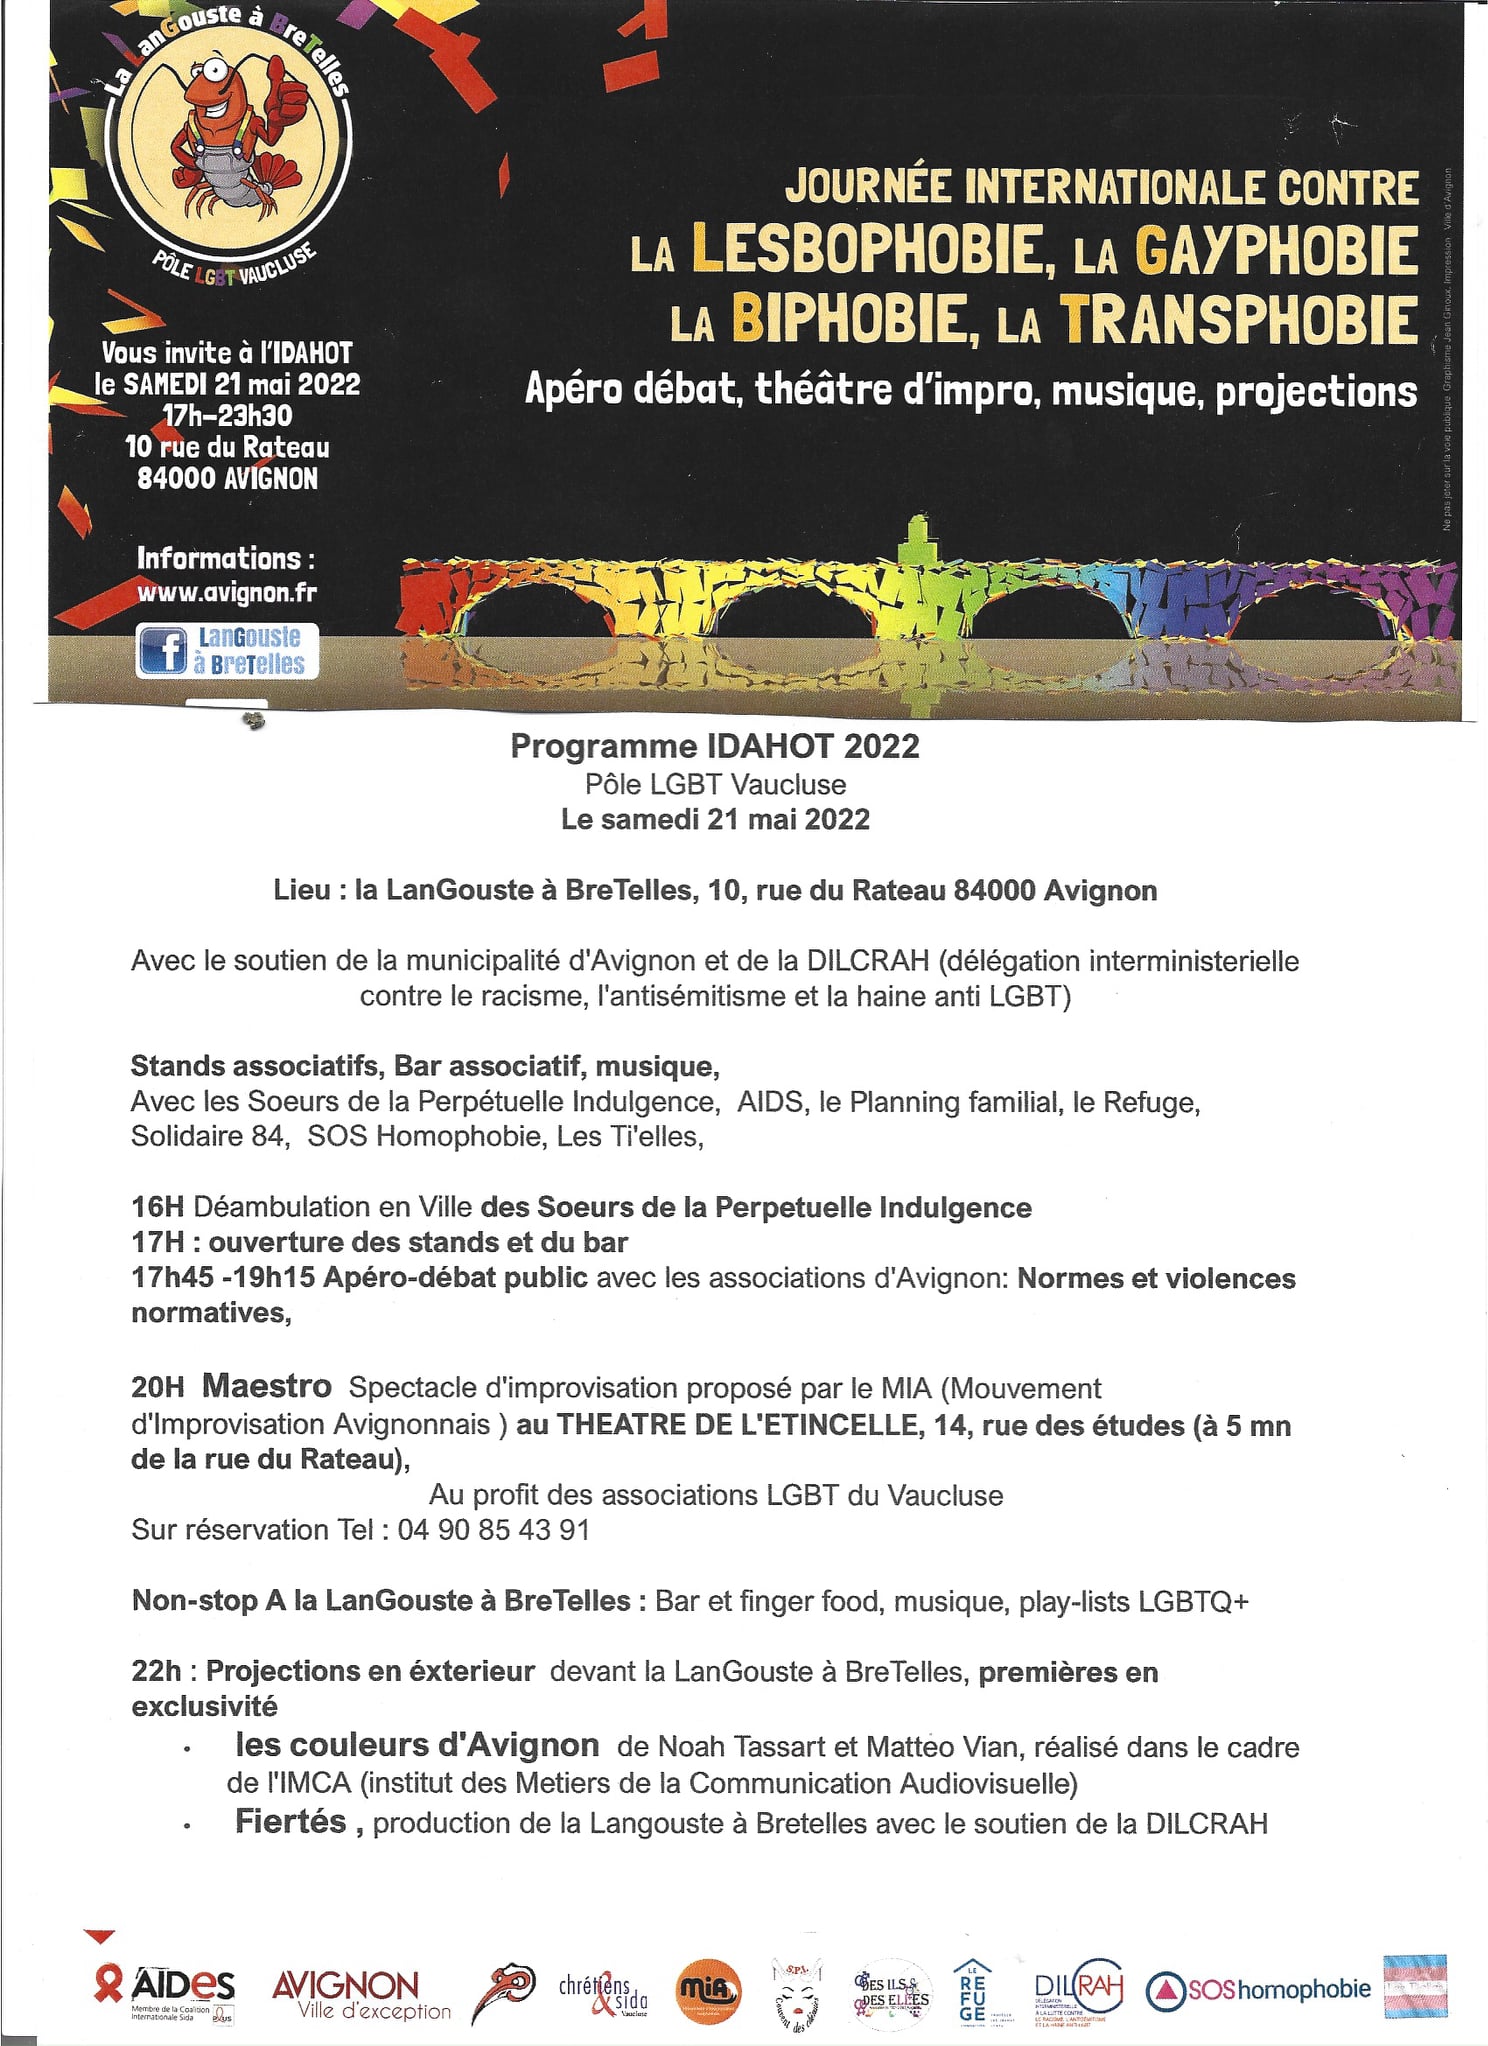 Venez fêter l'IDAHOT ce samedi 21 mai à La Langouste à Bretelles, le Centre LGBTQIA+ d'Avignon !